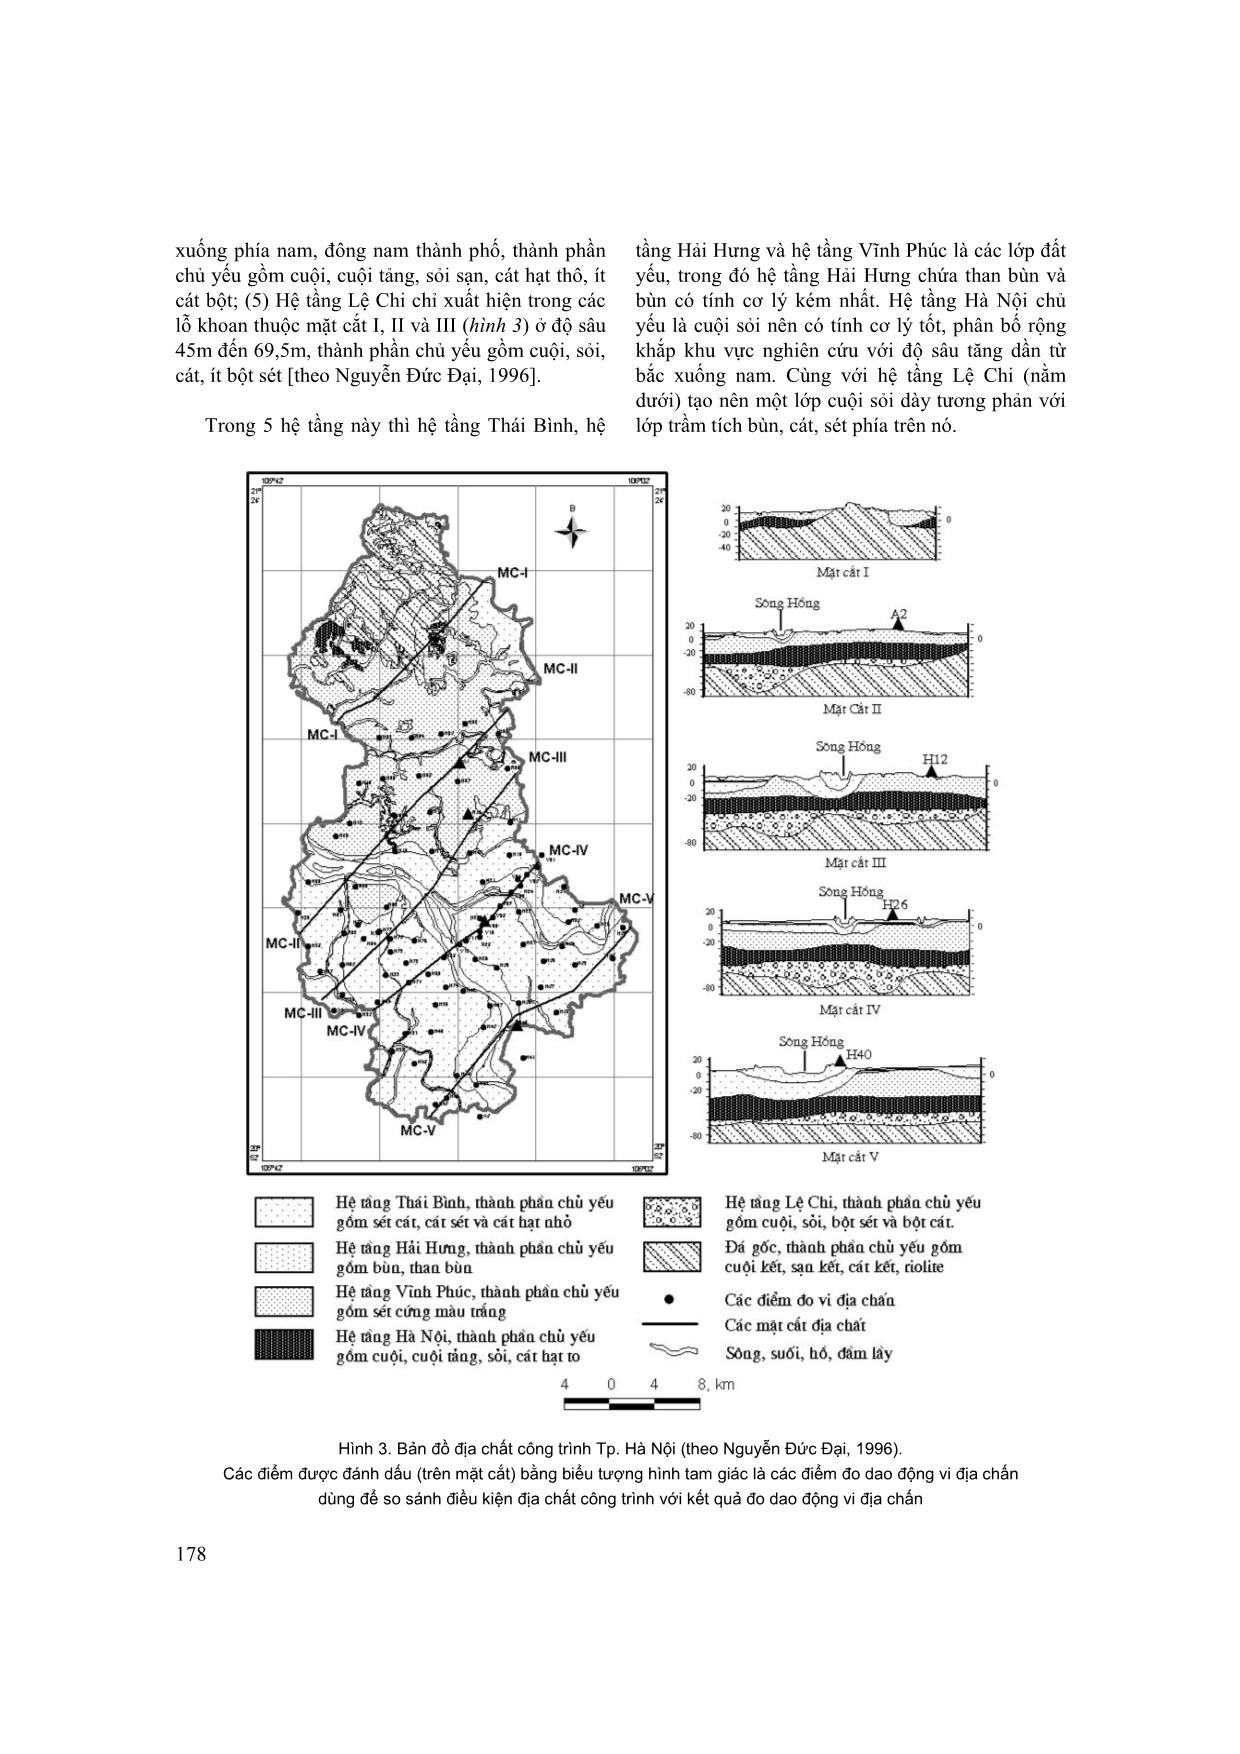 Sơ đồ vi phân vùng động đất thành phố Hà Nội trên cơ sở các kết quả đo dao động vi địa chấn trang 4